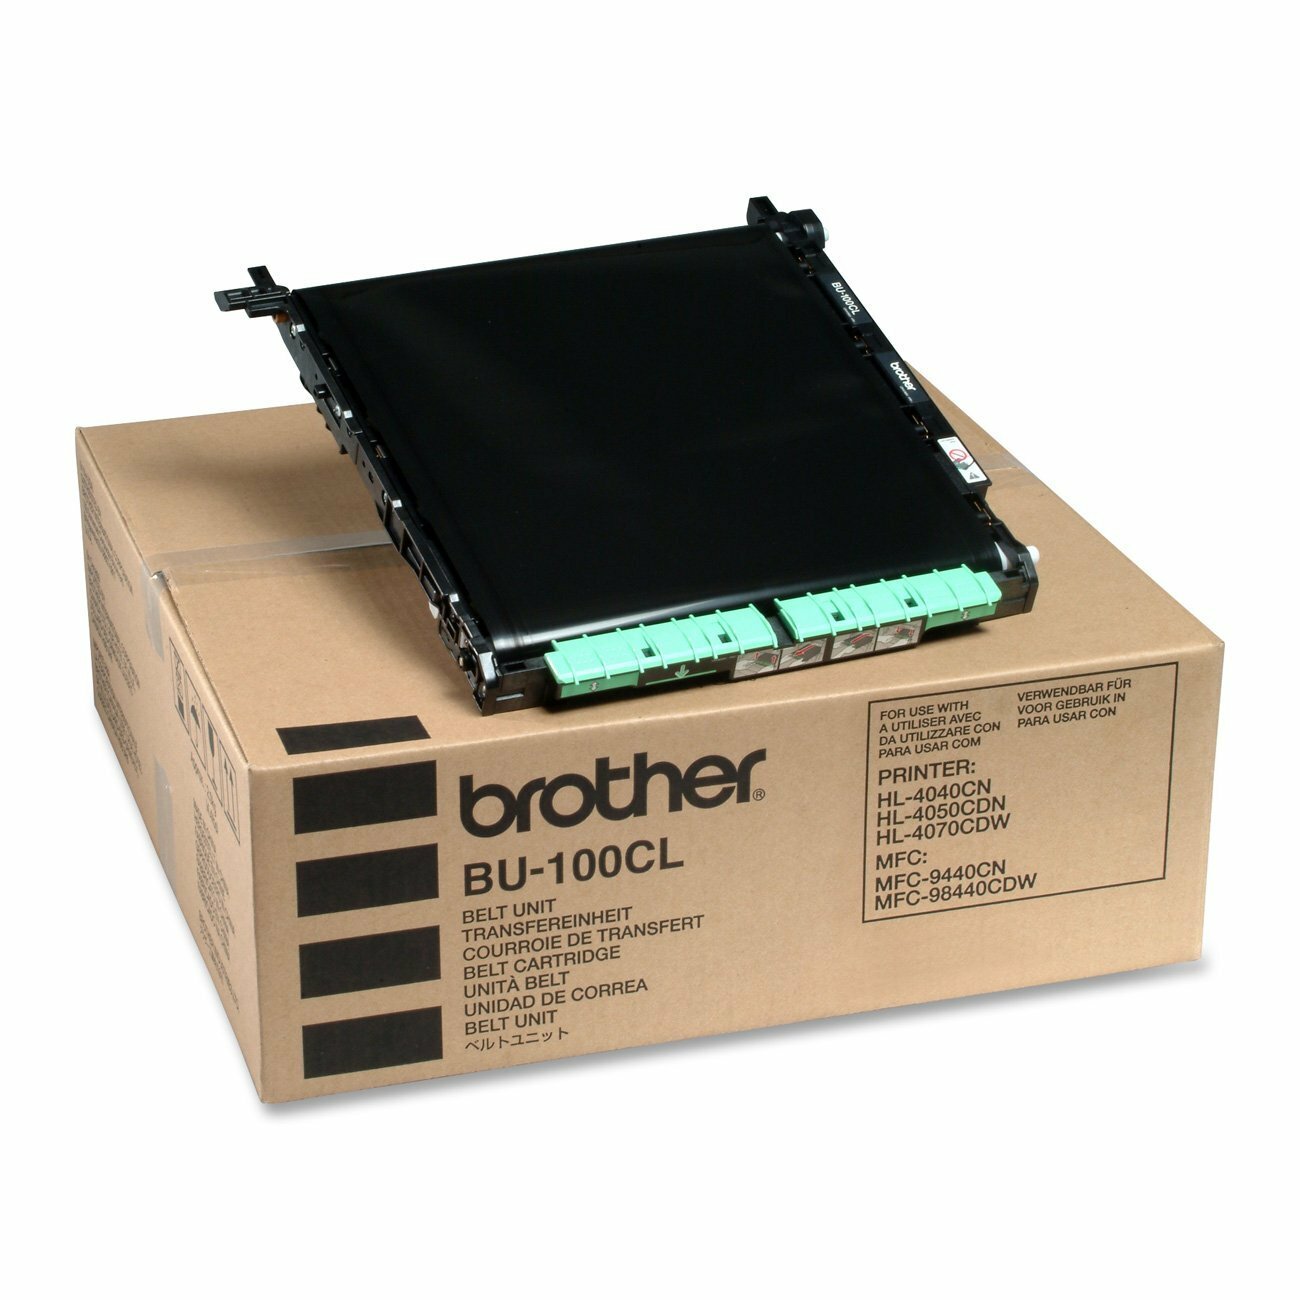 Brother BU-300CL Belt Unit Transfer Belt Genuine 50,000 pages (BU-300CL)